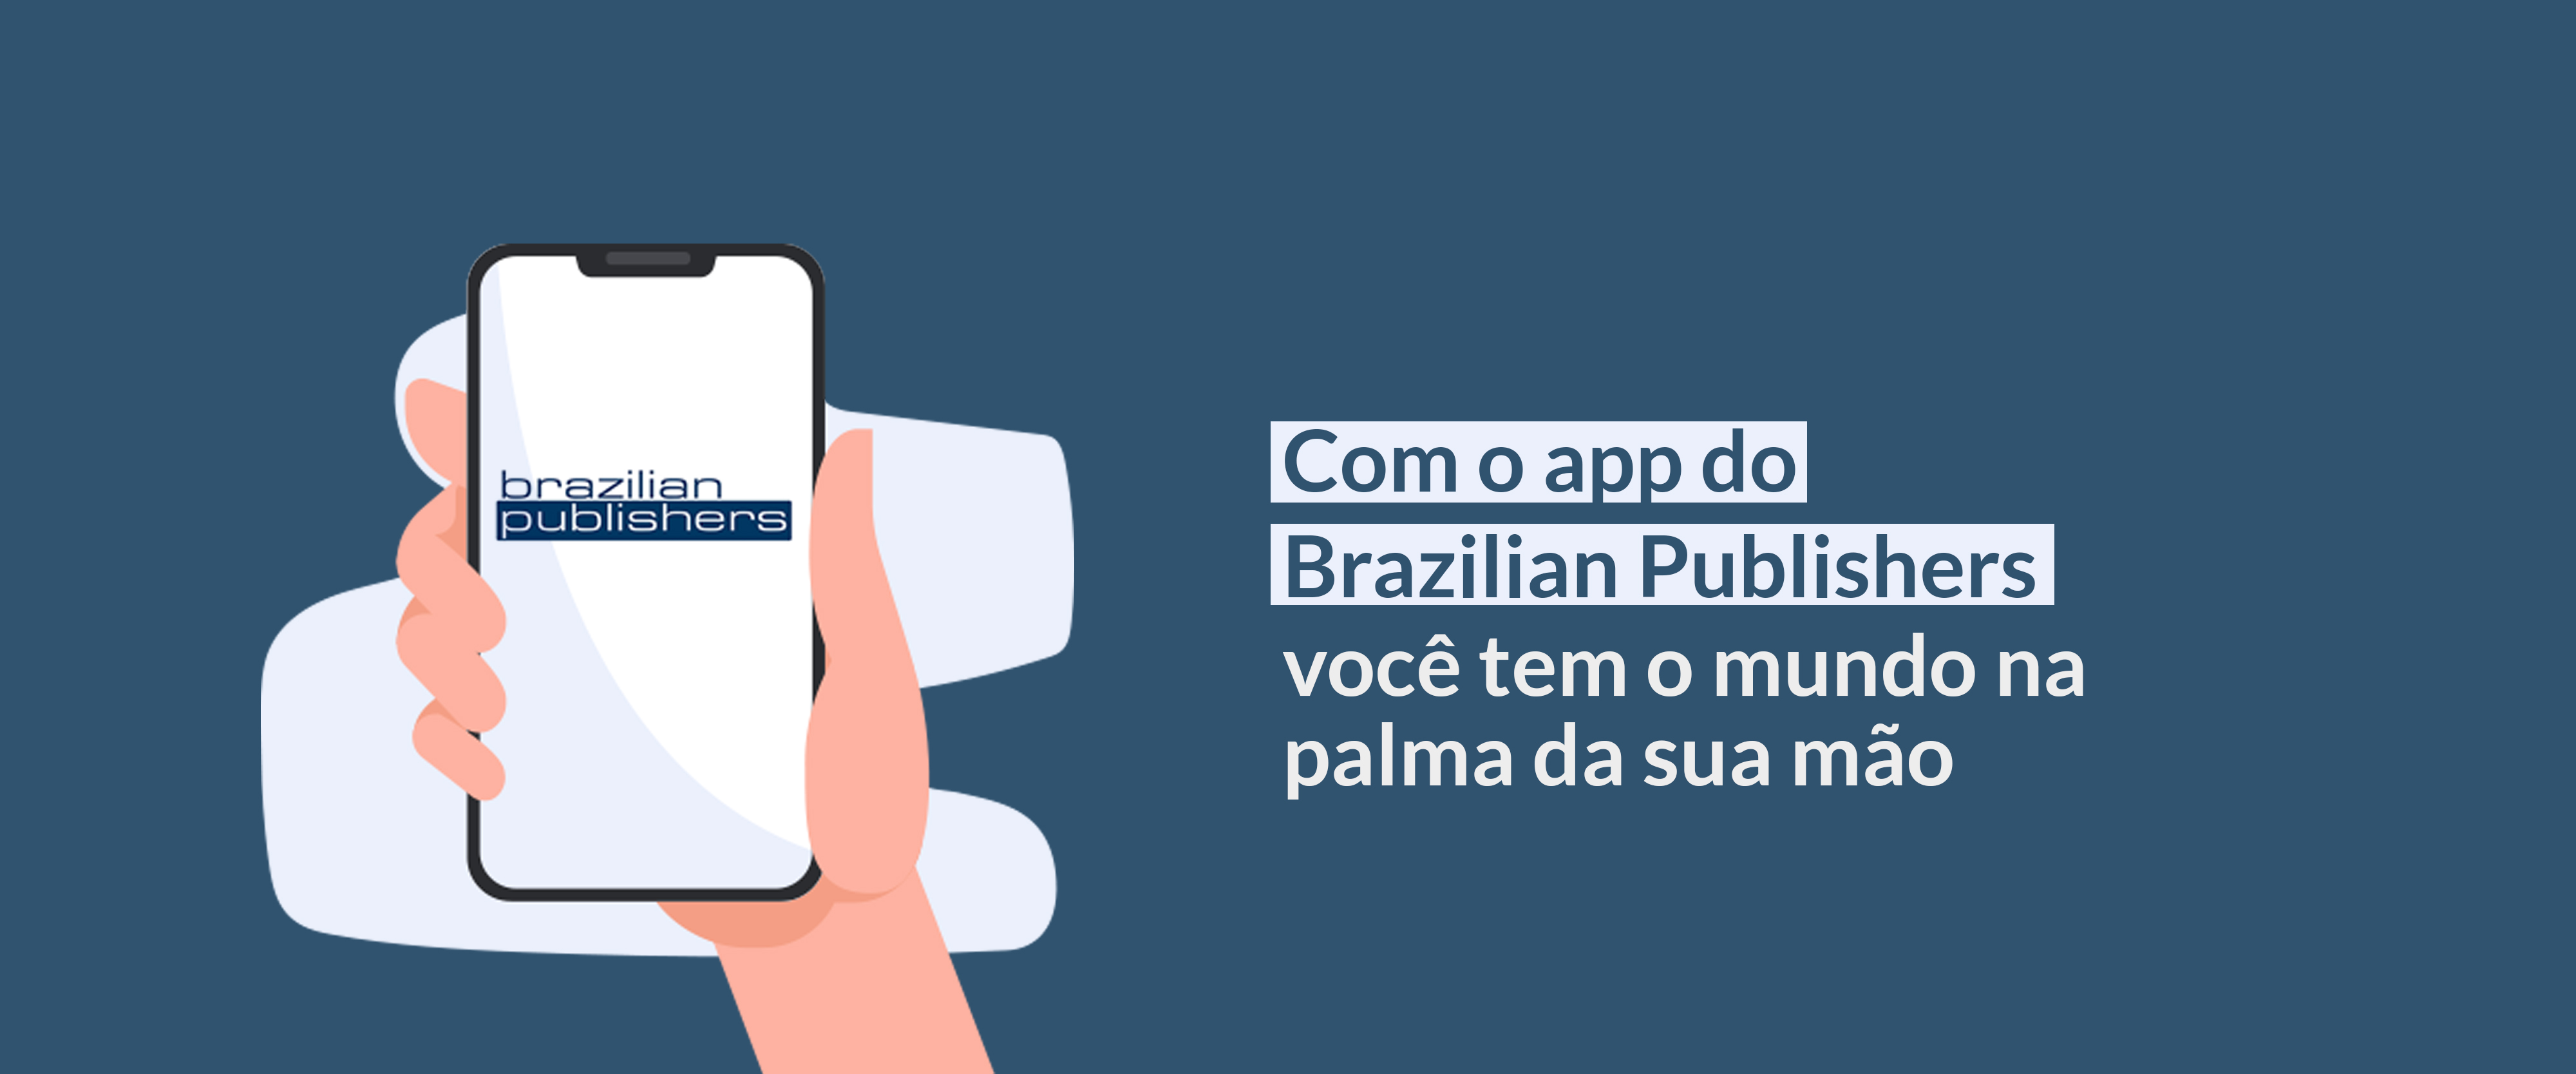 Brazilian Publishers lança app globalmente e realiza segunda rodada de negócios internacional